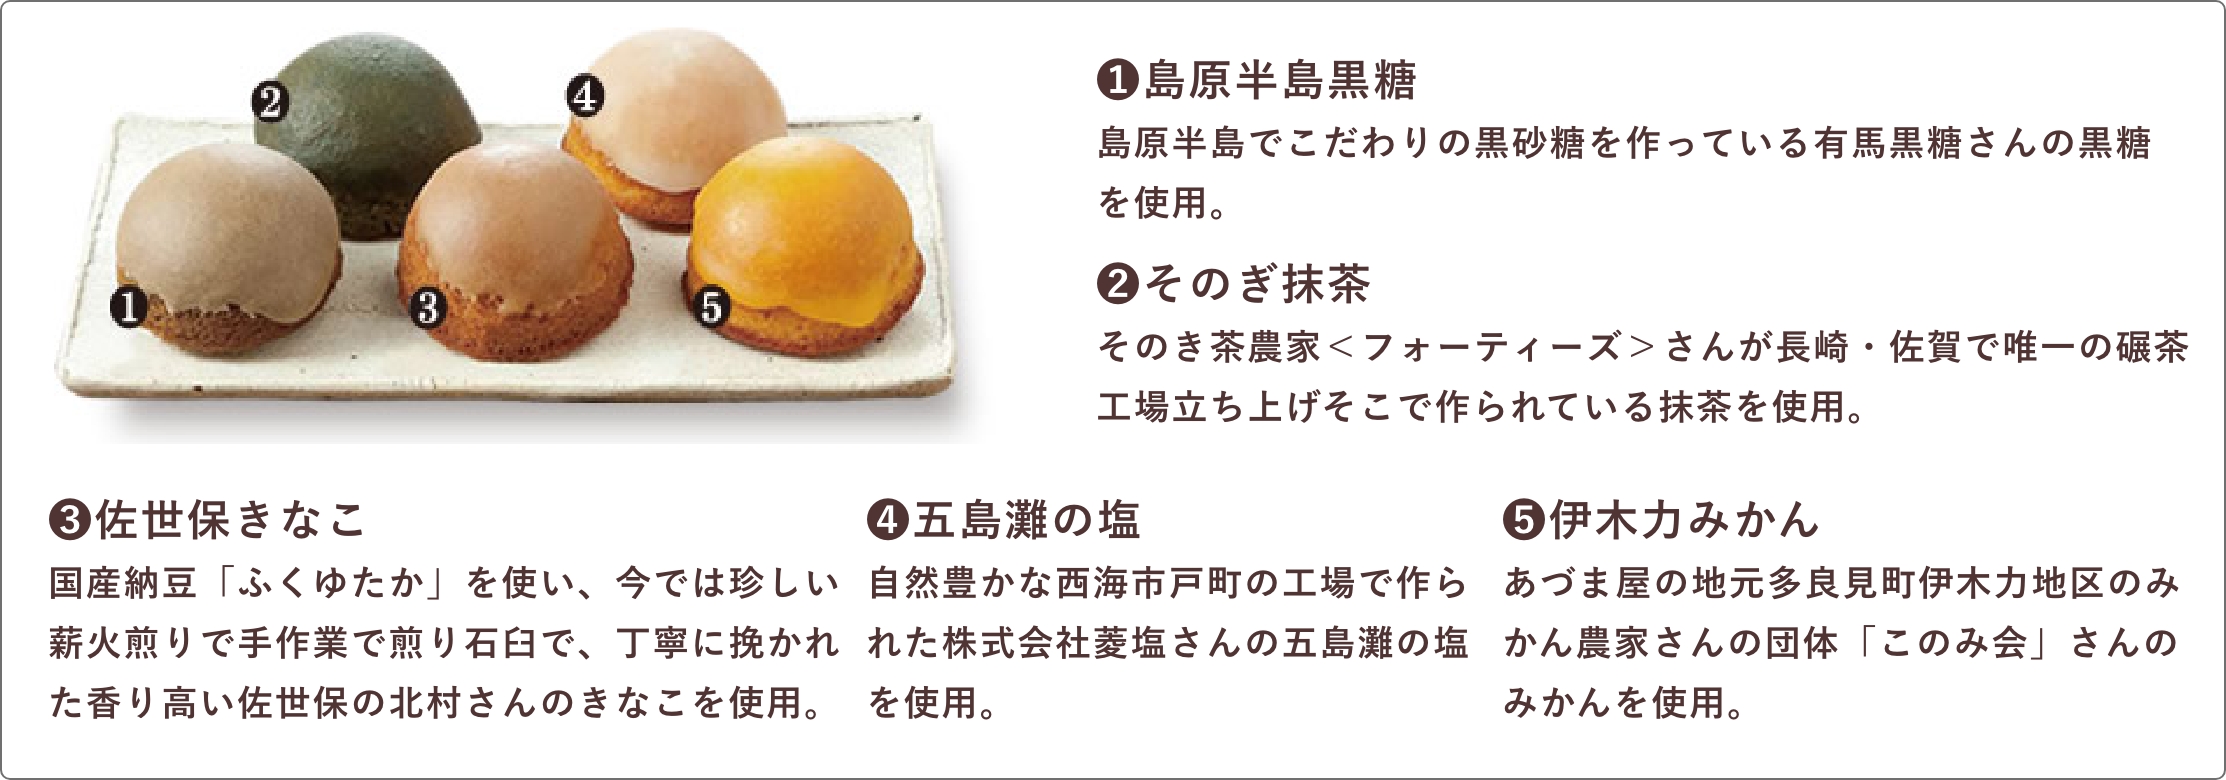 長崎ドーナツ5種類